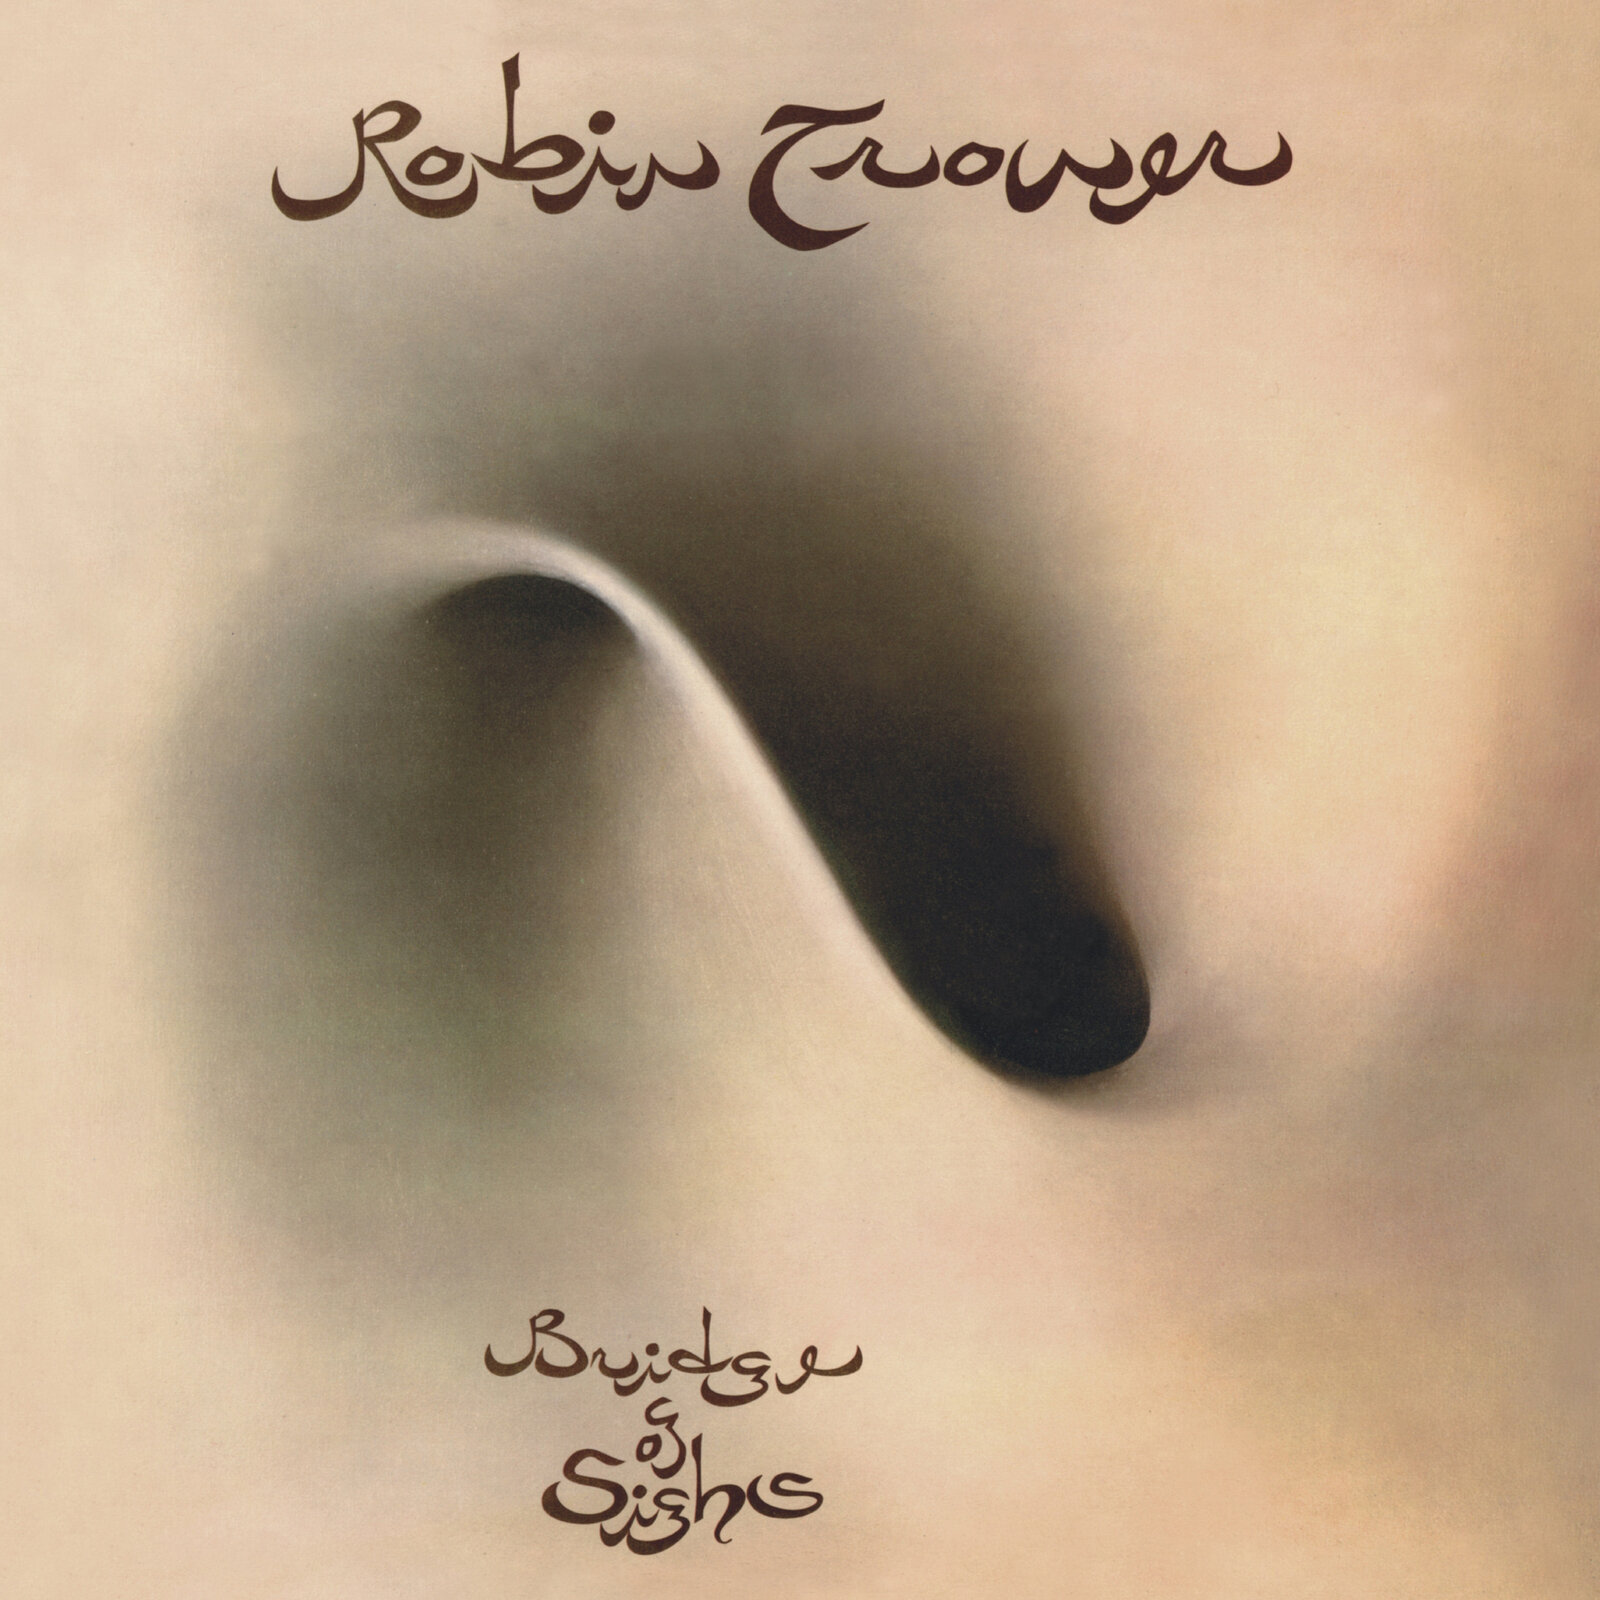 Δίσκος LP Robin Trower - Bridge of Sighs (50th Anniversary Edition) (High Quality) (2 LP)